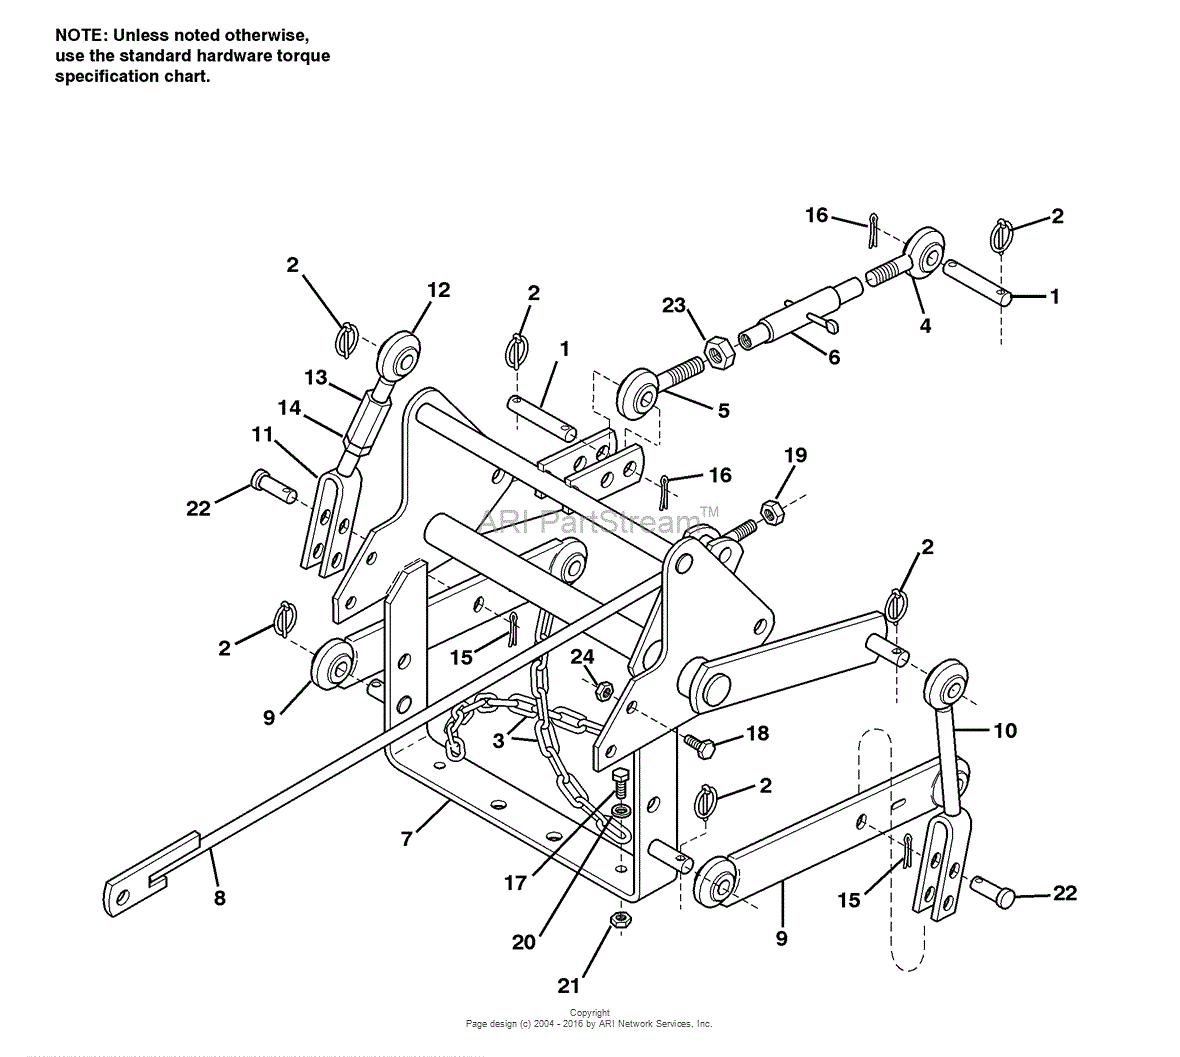 John Deere 3 Point Hitch Parts Diagram - Unique Products